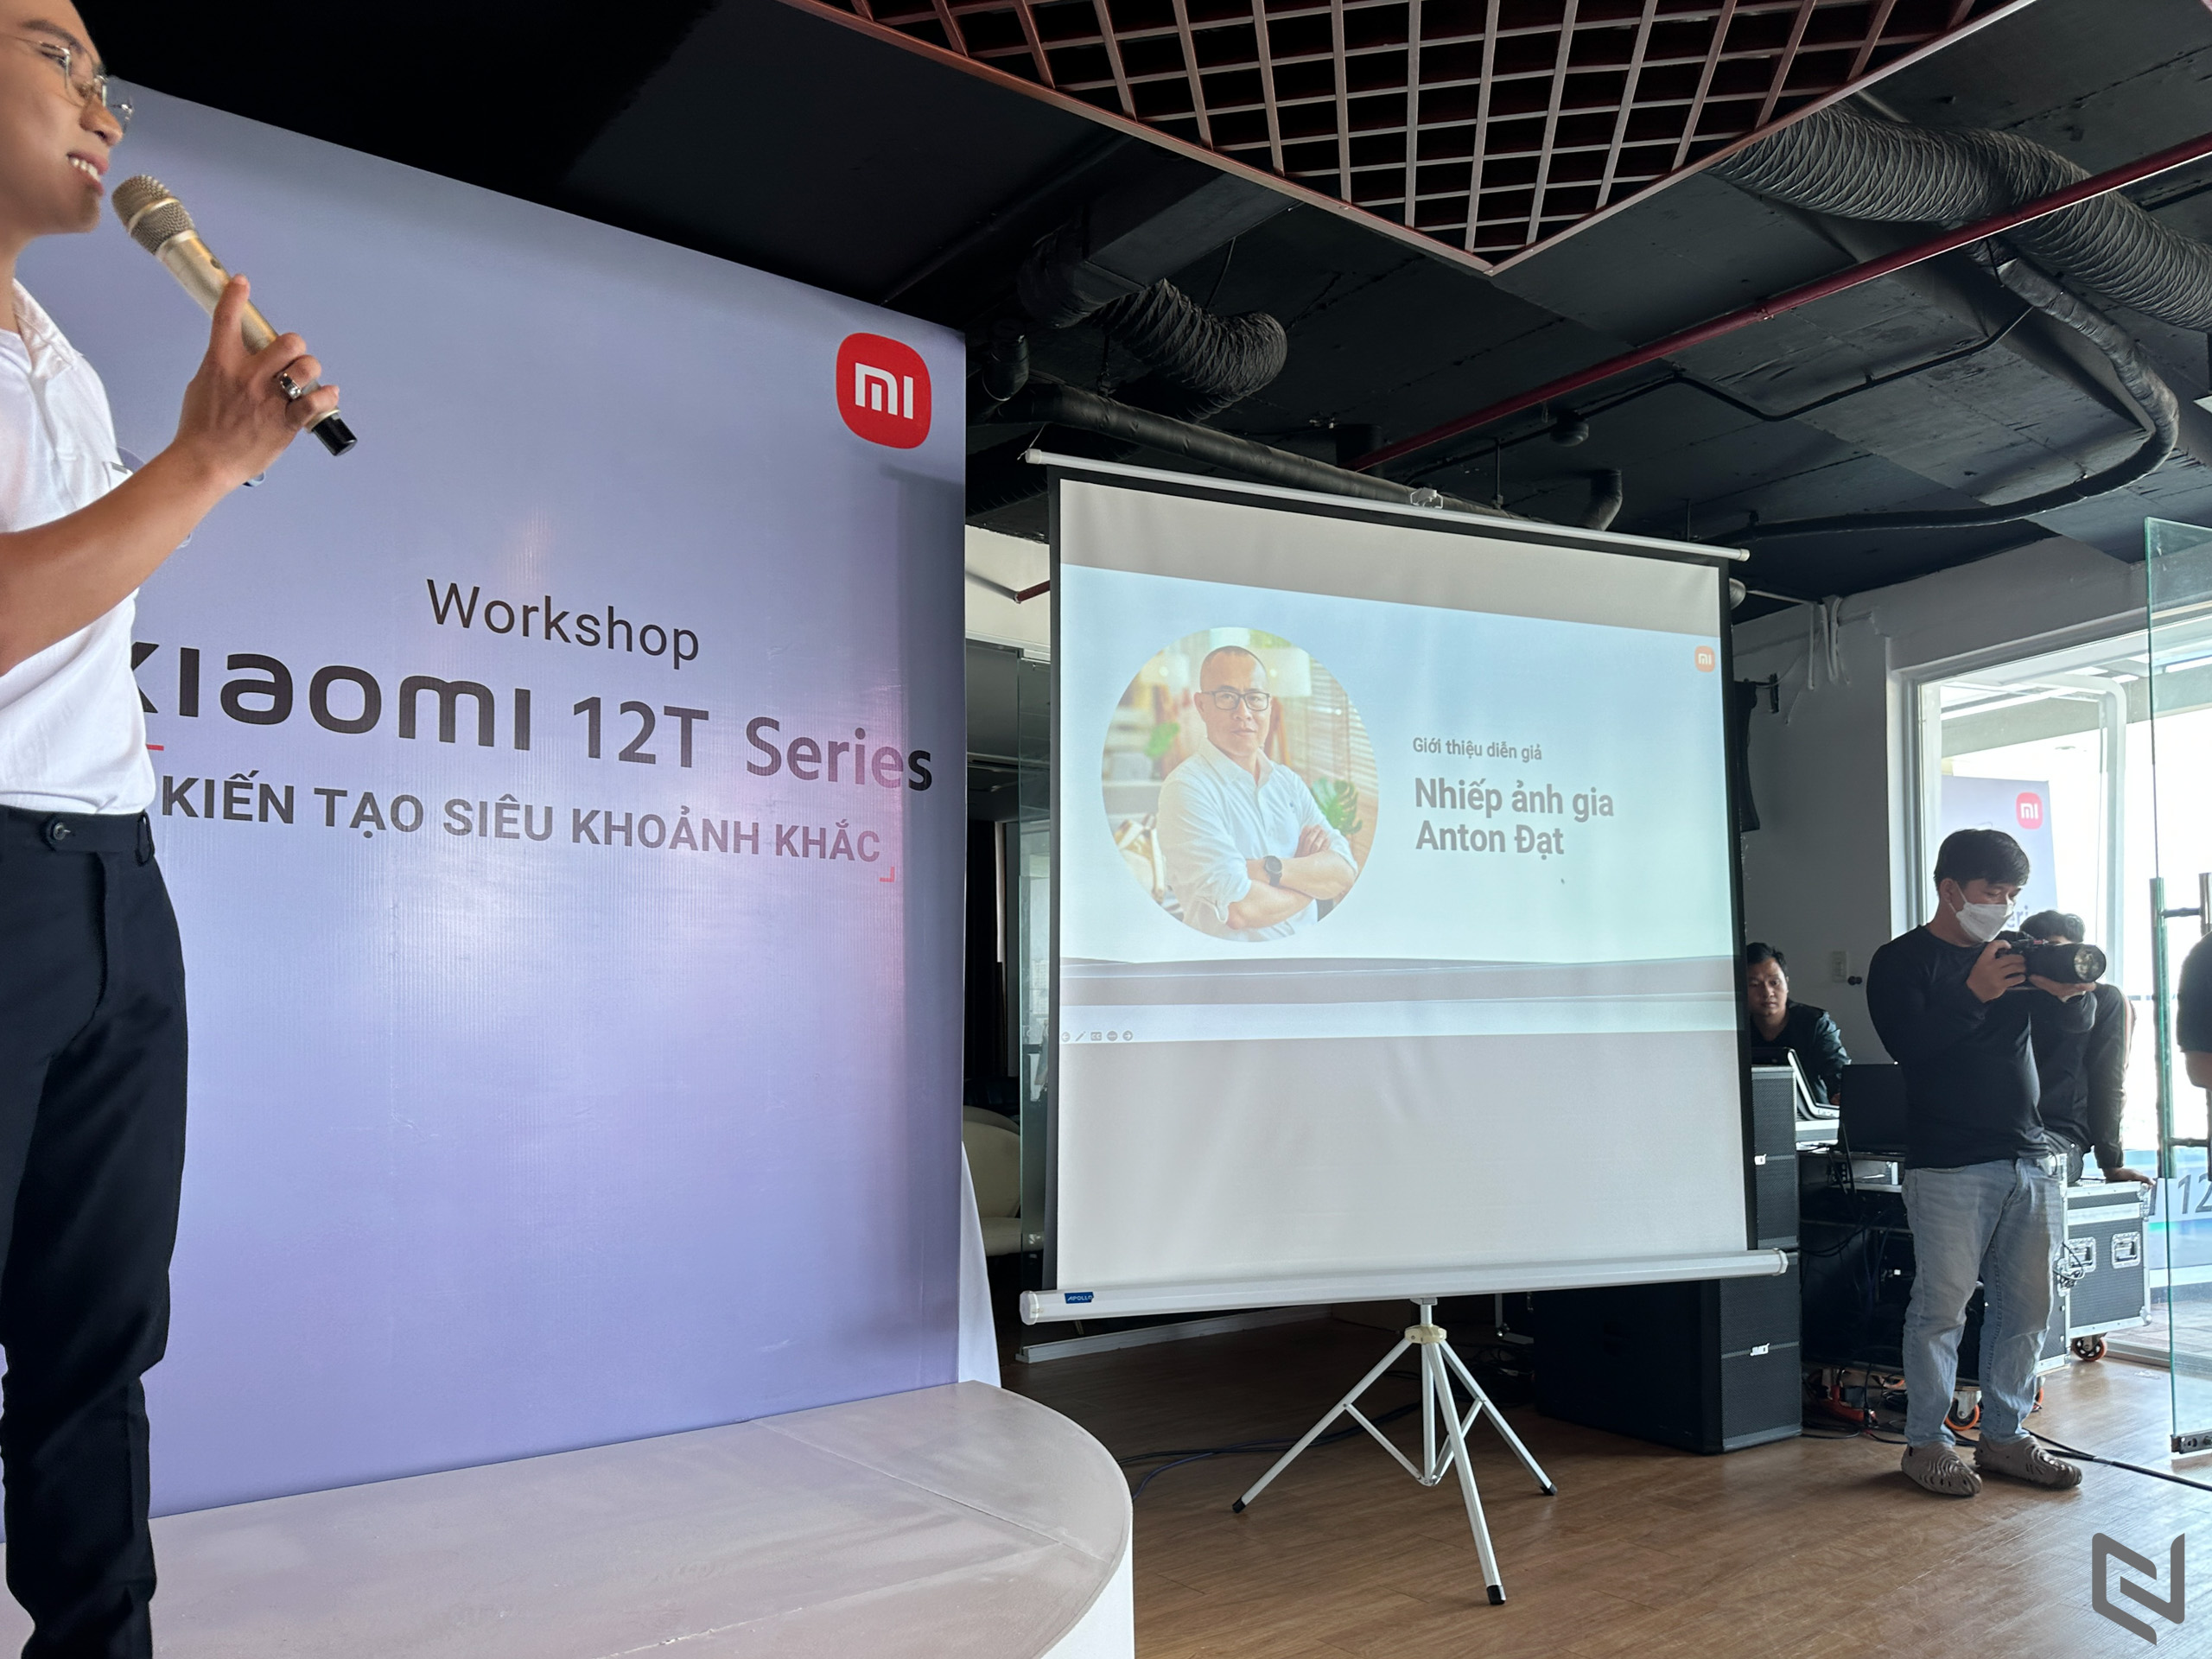 Workshop ‘Kiến Tạo Siêu Khoảnh Khắc’ cùng Xiaomi 12T series và các nhiếp ảnh gia